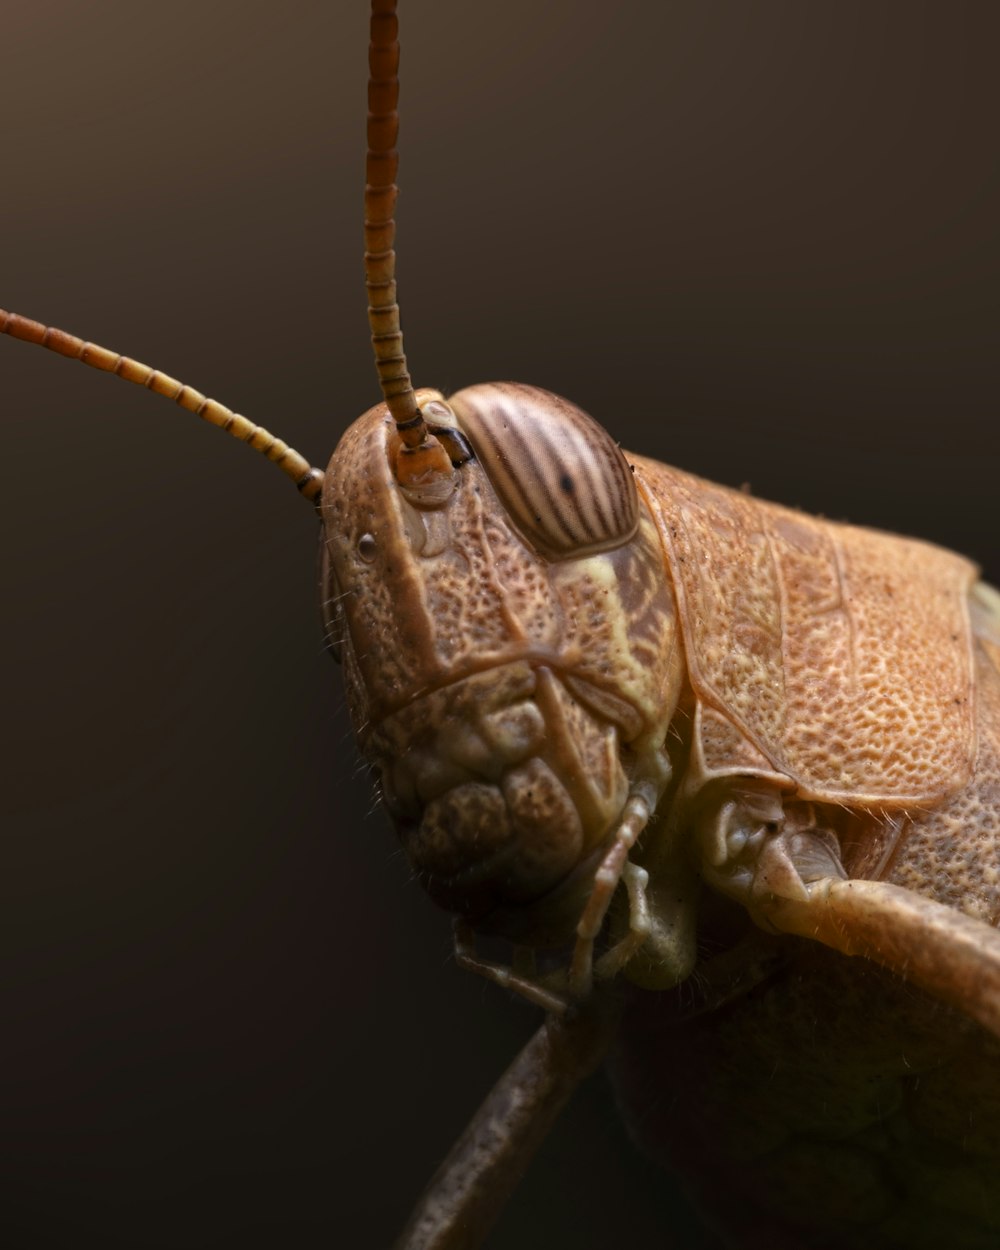 um close-up de um bug